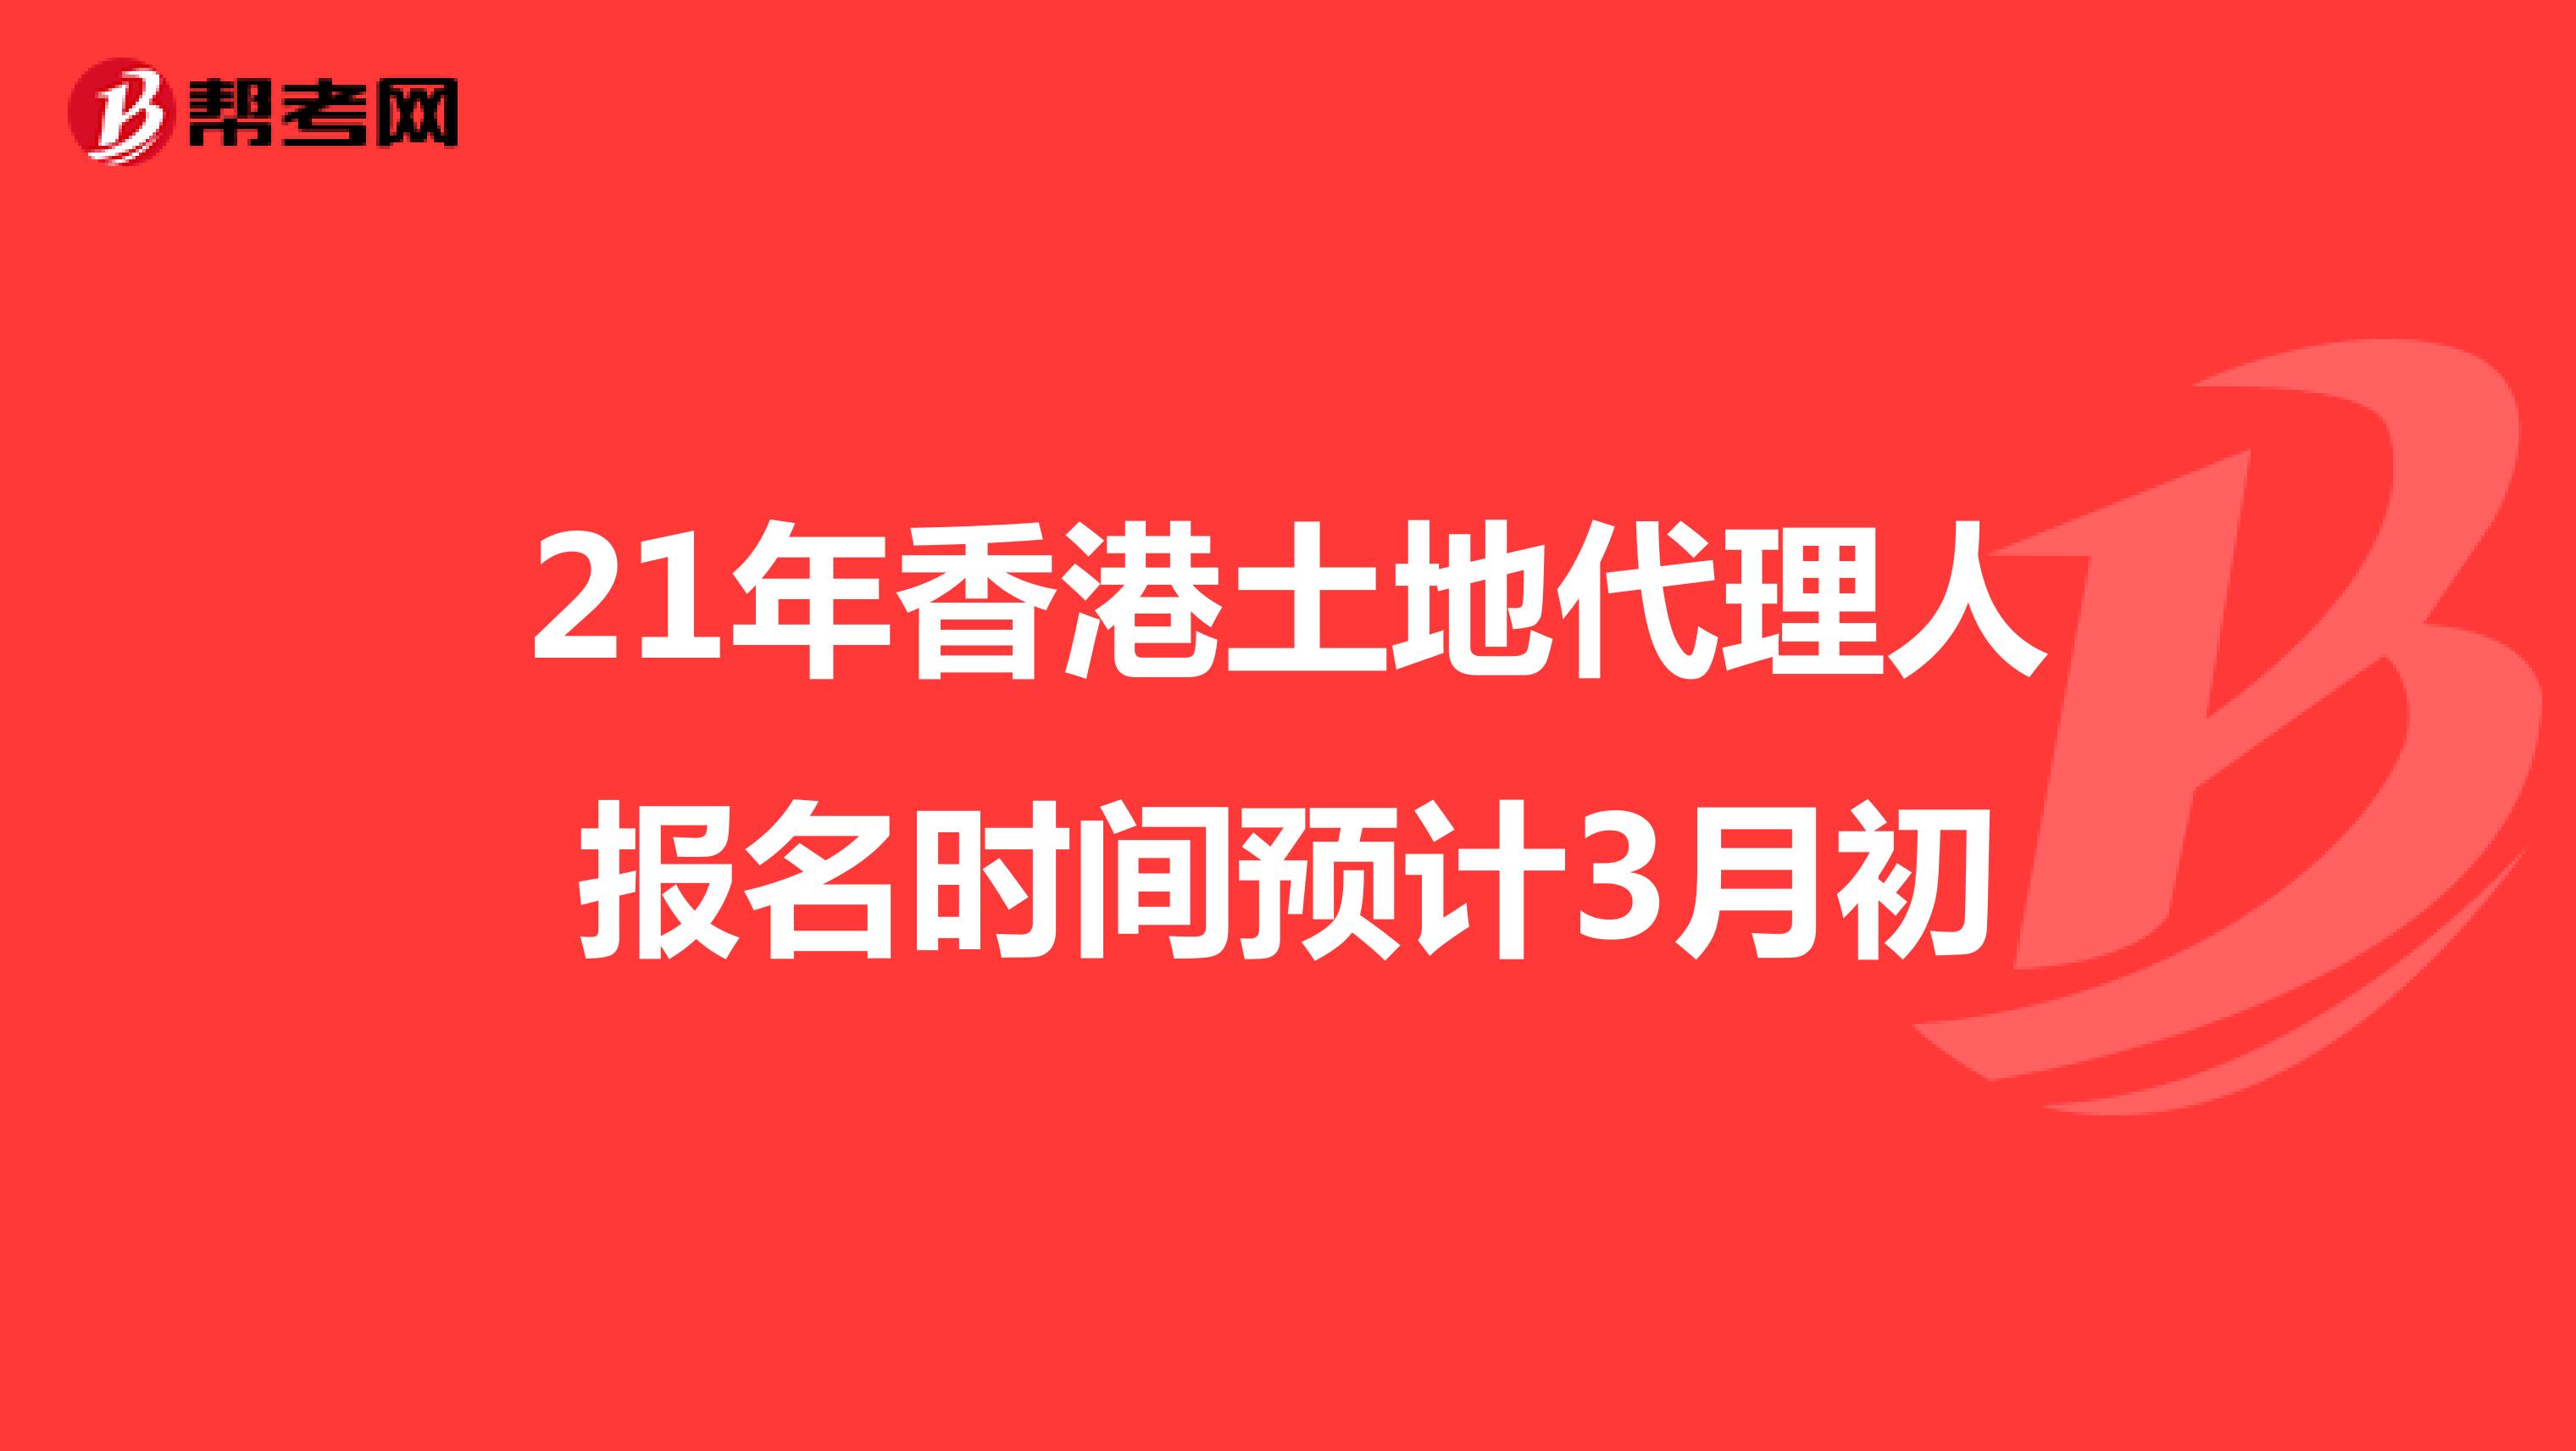 21年香港土地代理人报名时间预计3月初